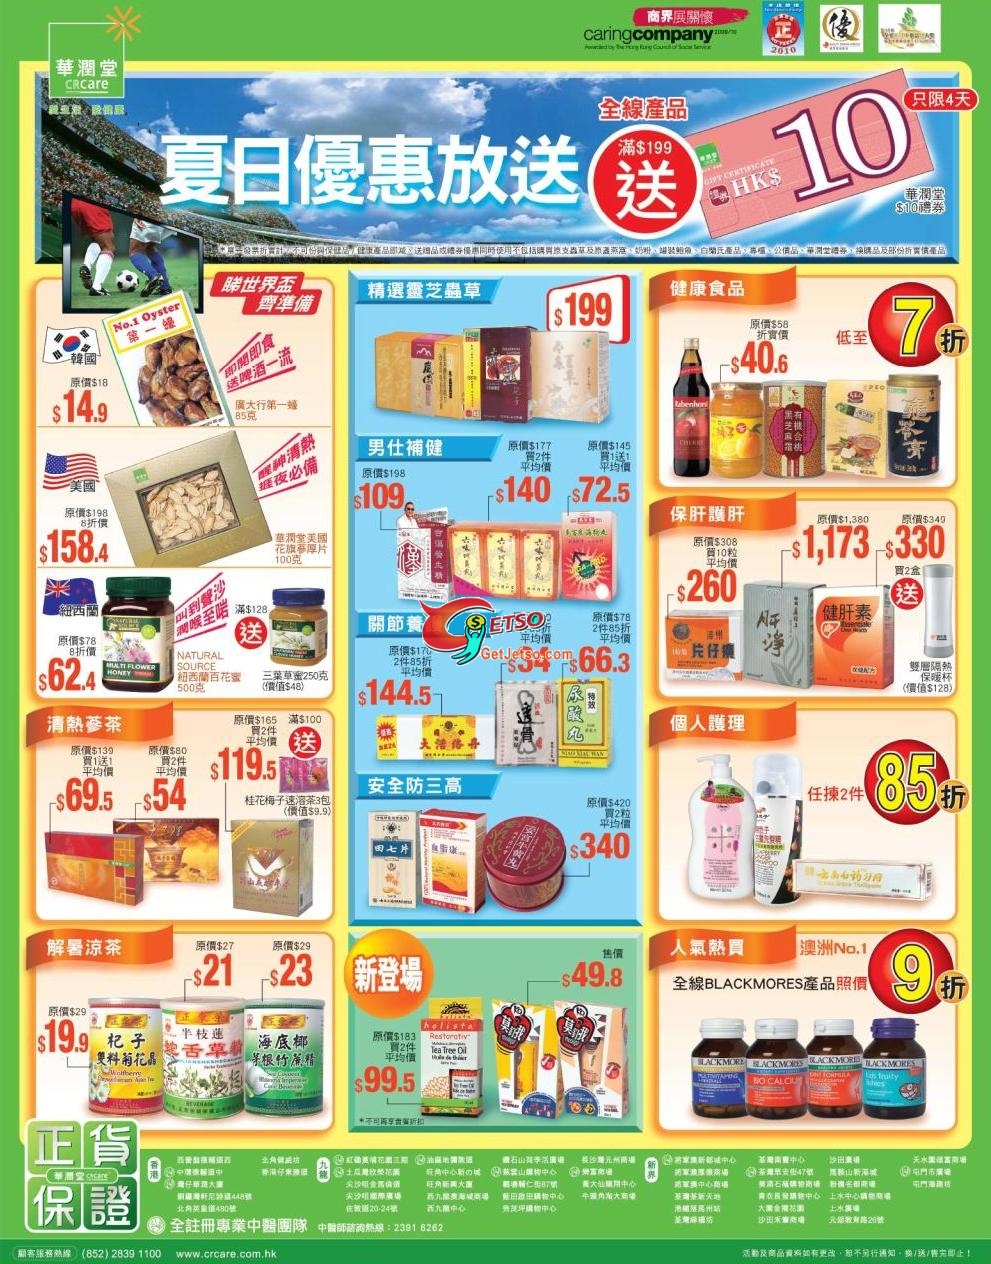 華潤堂夏日減價及折扣優惠,買滿9送禮券(至10年6月7日)圖片1